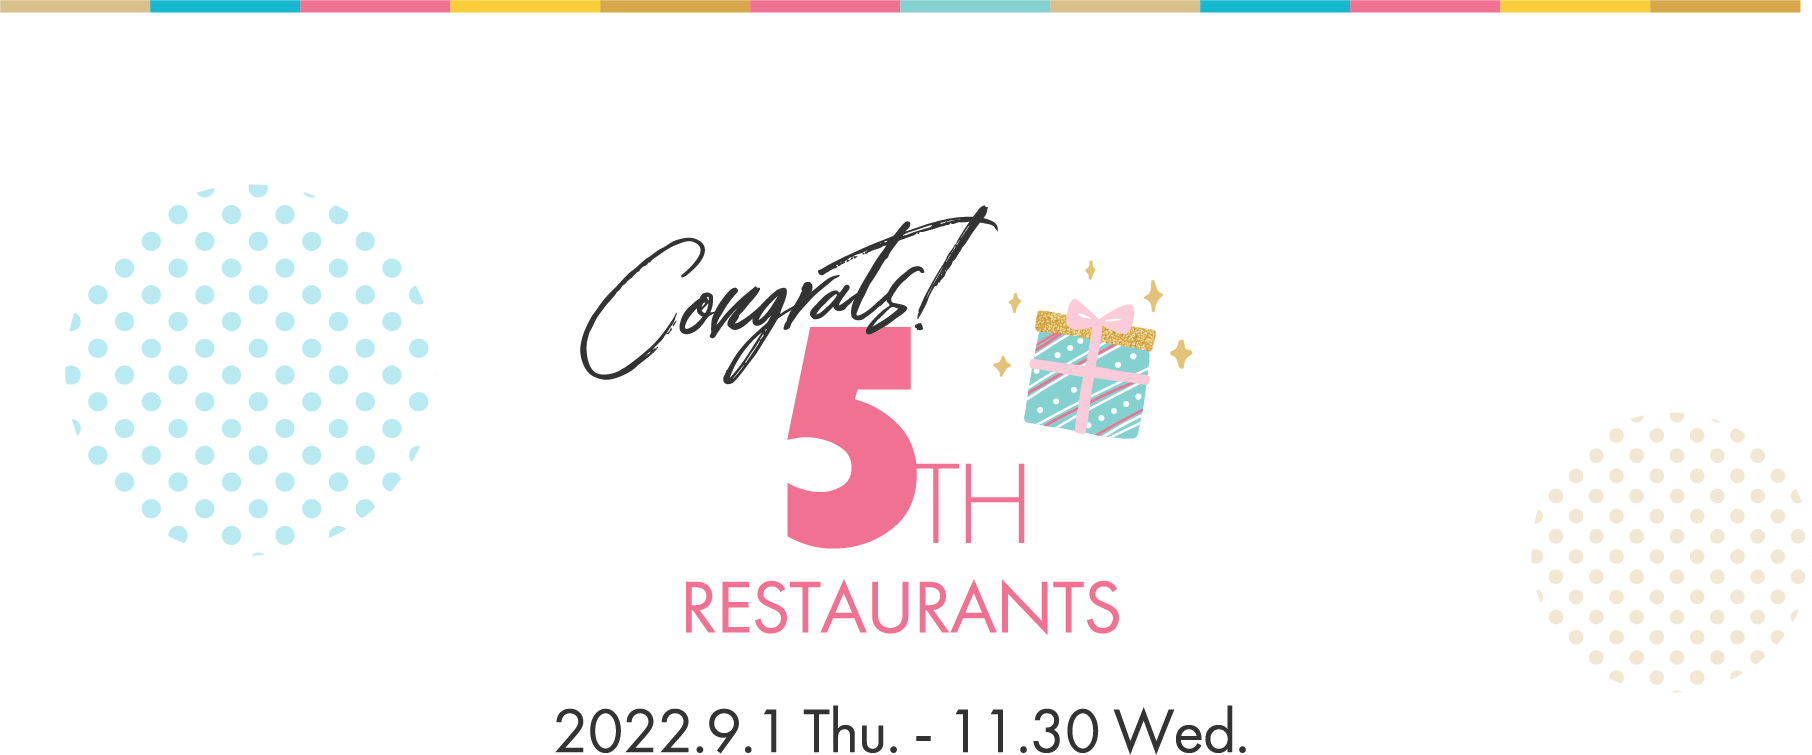 Congrats! 5TH RESTAURANTS